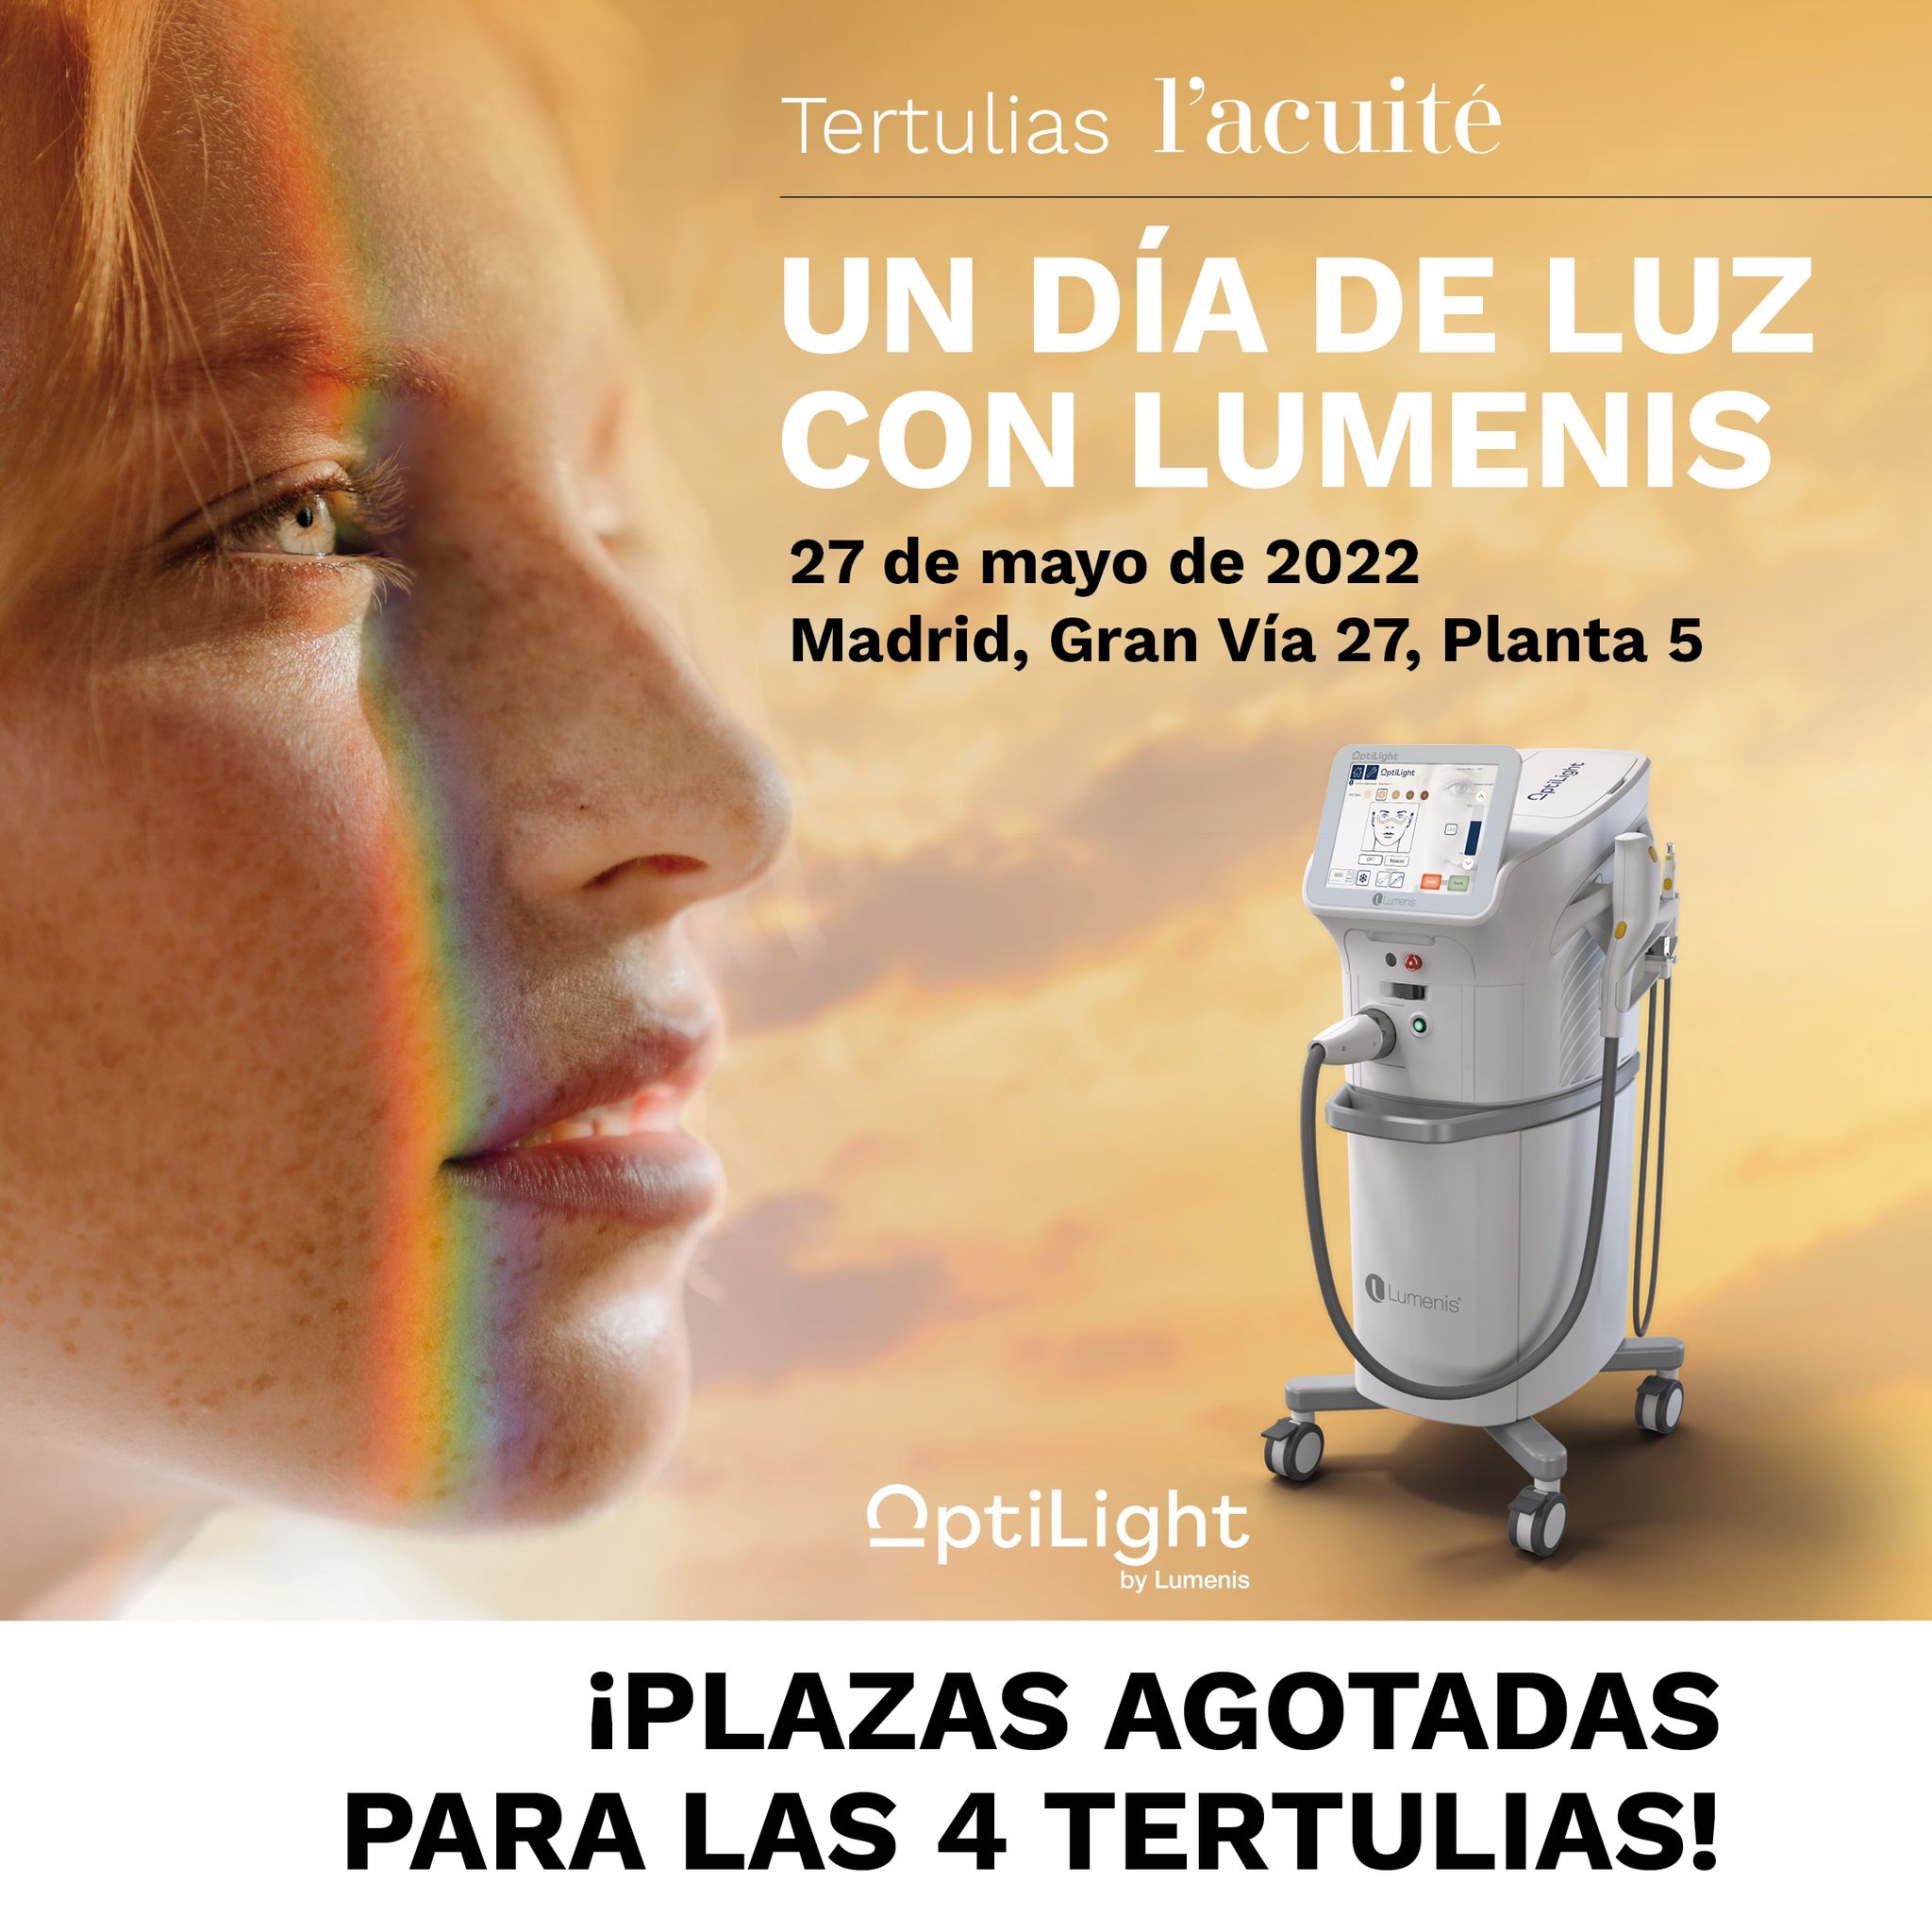 50 oftalmólogos entre tertulianos y asistentes se reúnen el viernes 27 de mayo en Madrid para hablar de la tecnología IPL de Lumenis